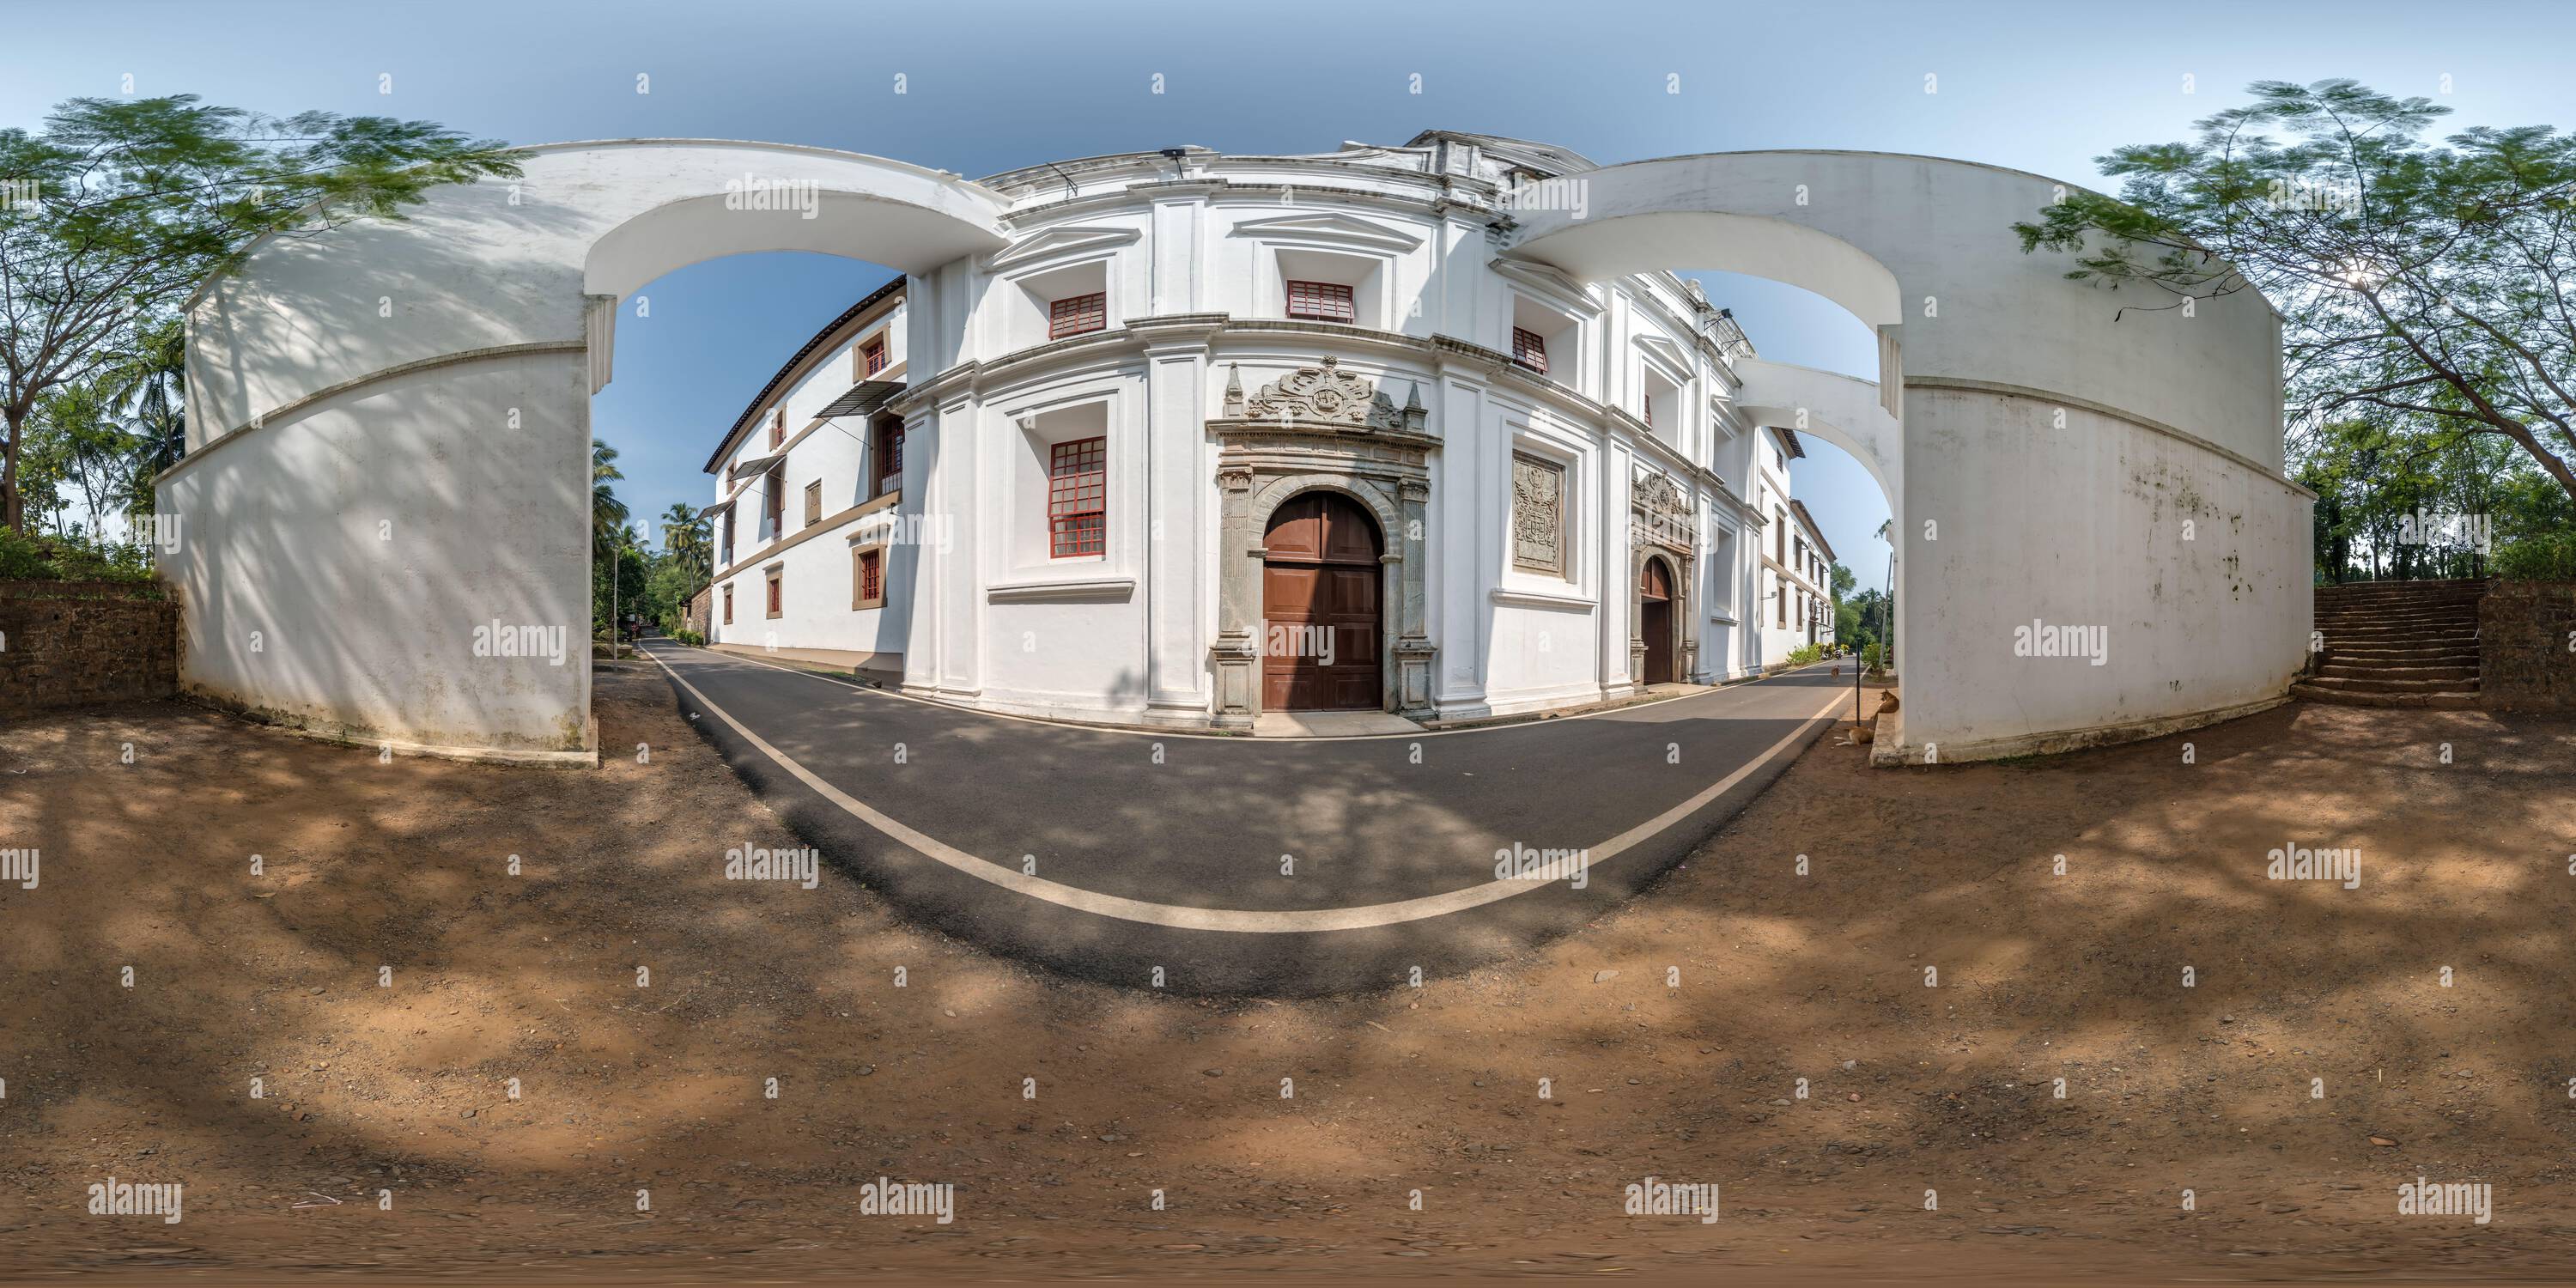 Vue panoramique à 360° de Plein hdri 360 panorama de l'église catholique portugaise avec des arches dans la jungle parmi les palmiers dans le village tropical indien en en projection équirectangulaire avec